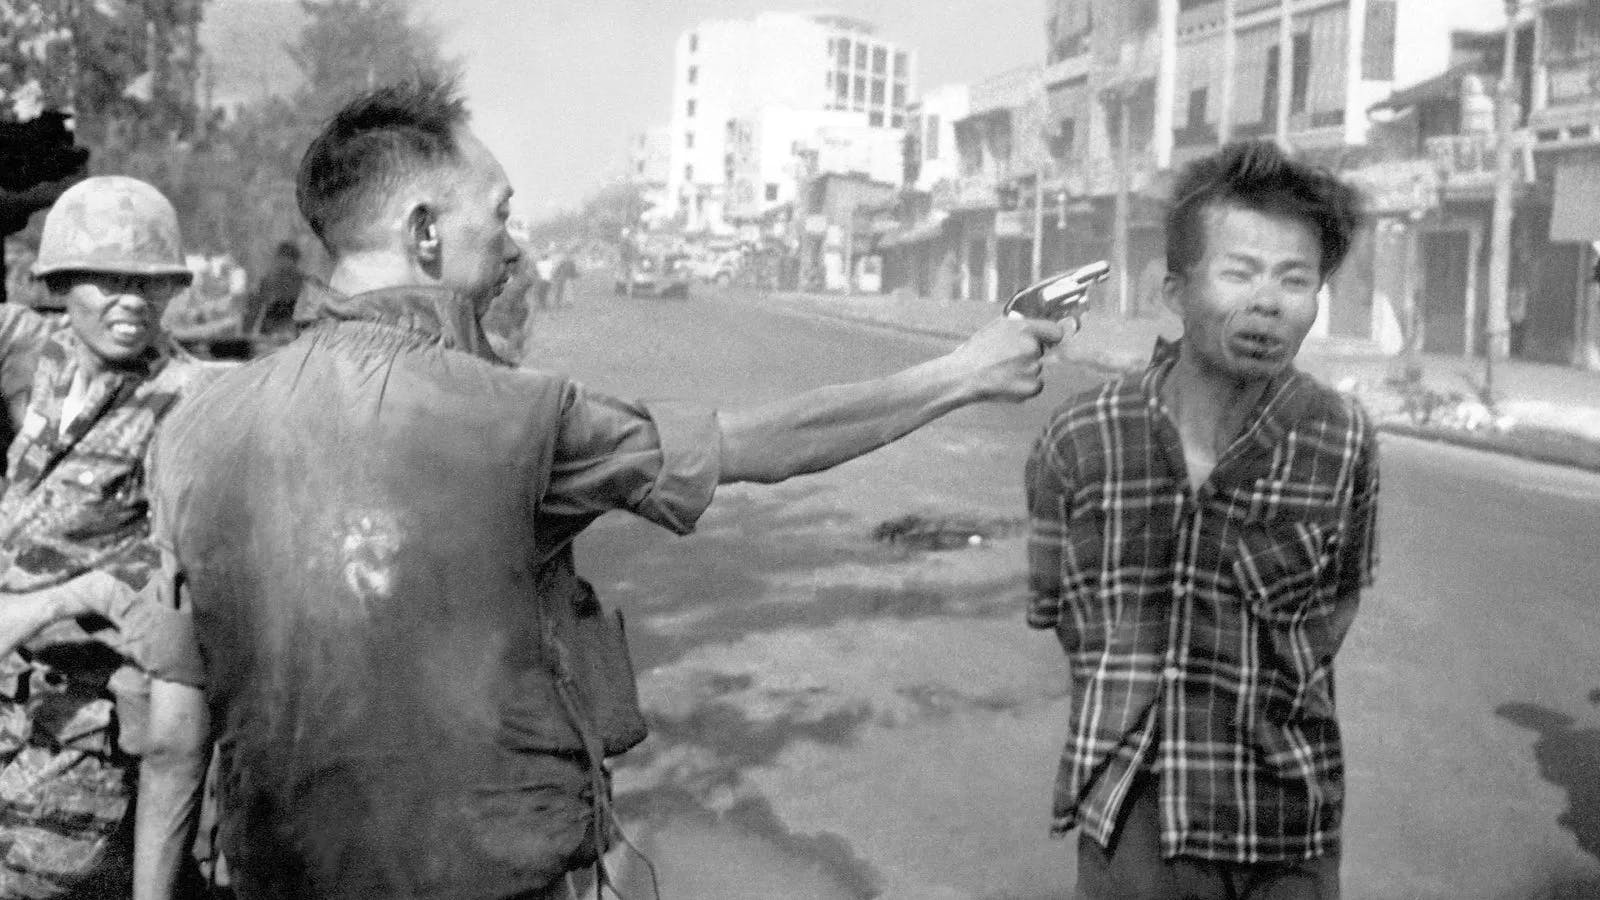 Eddie Adams' iconic Vietnam War photo